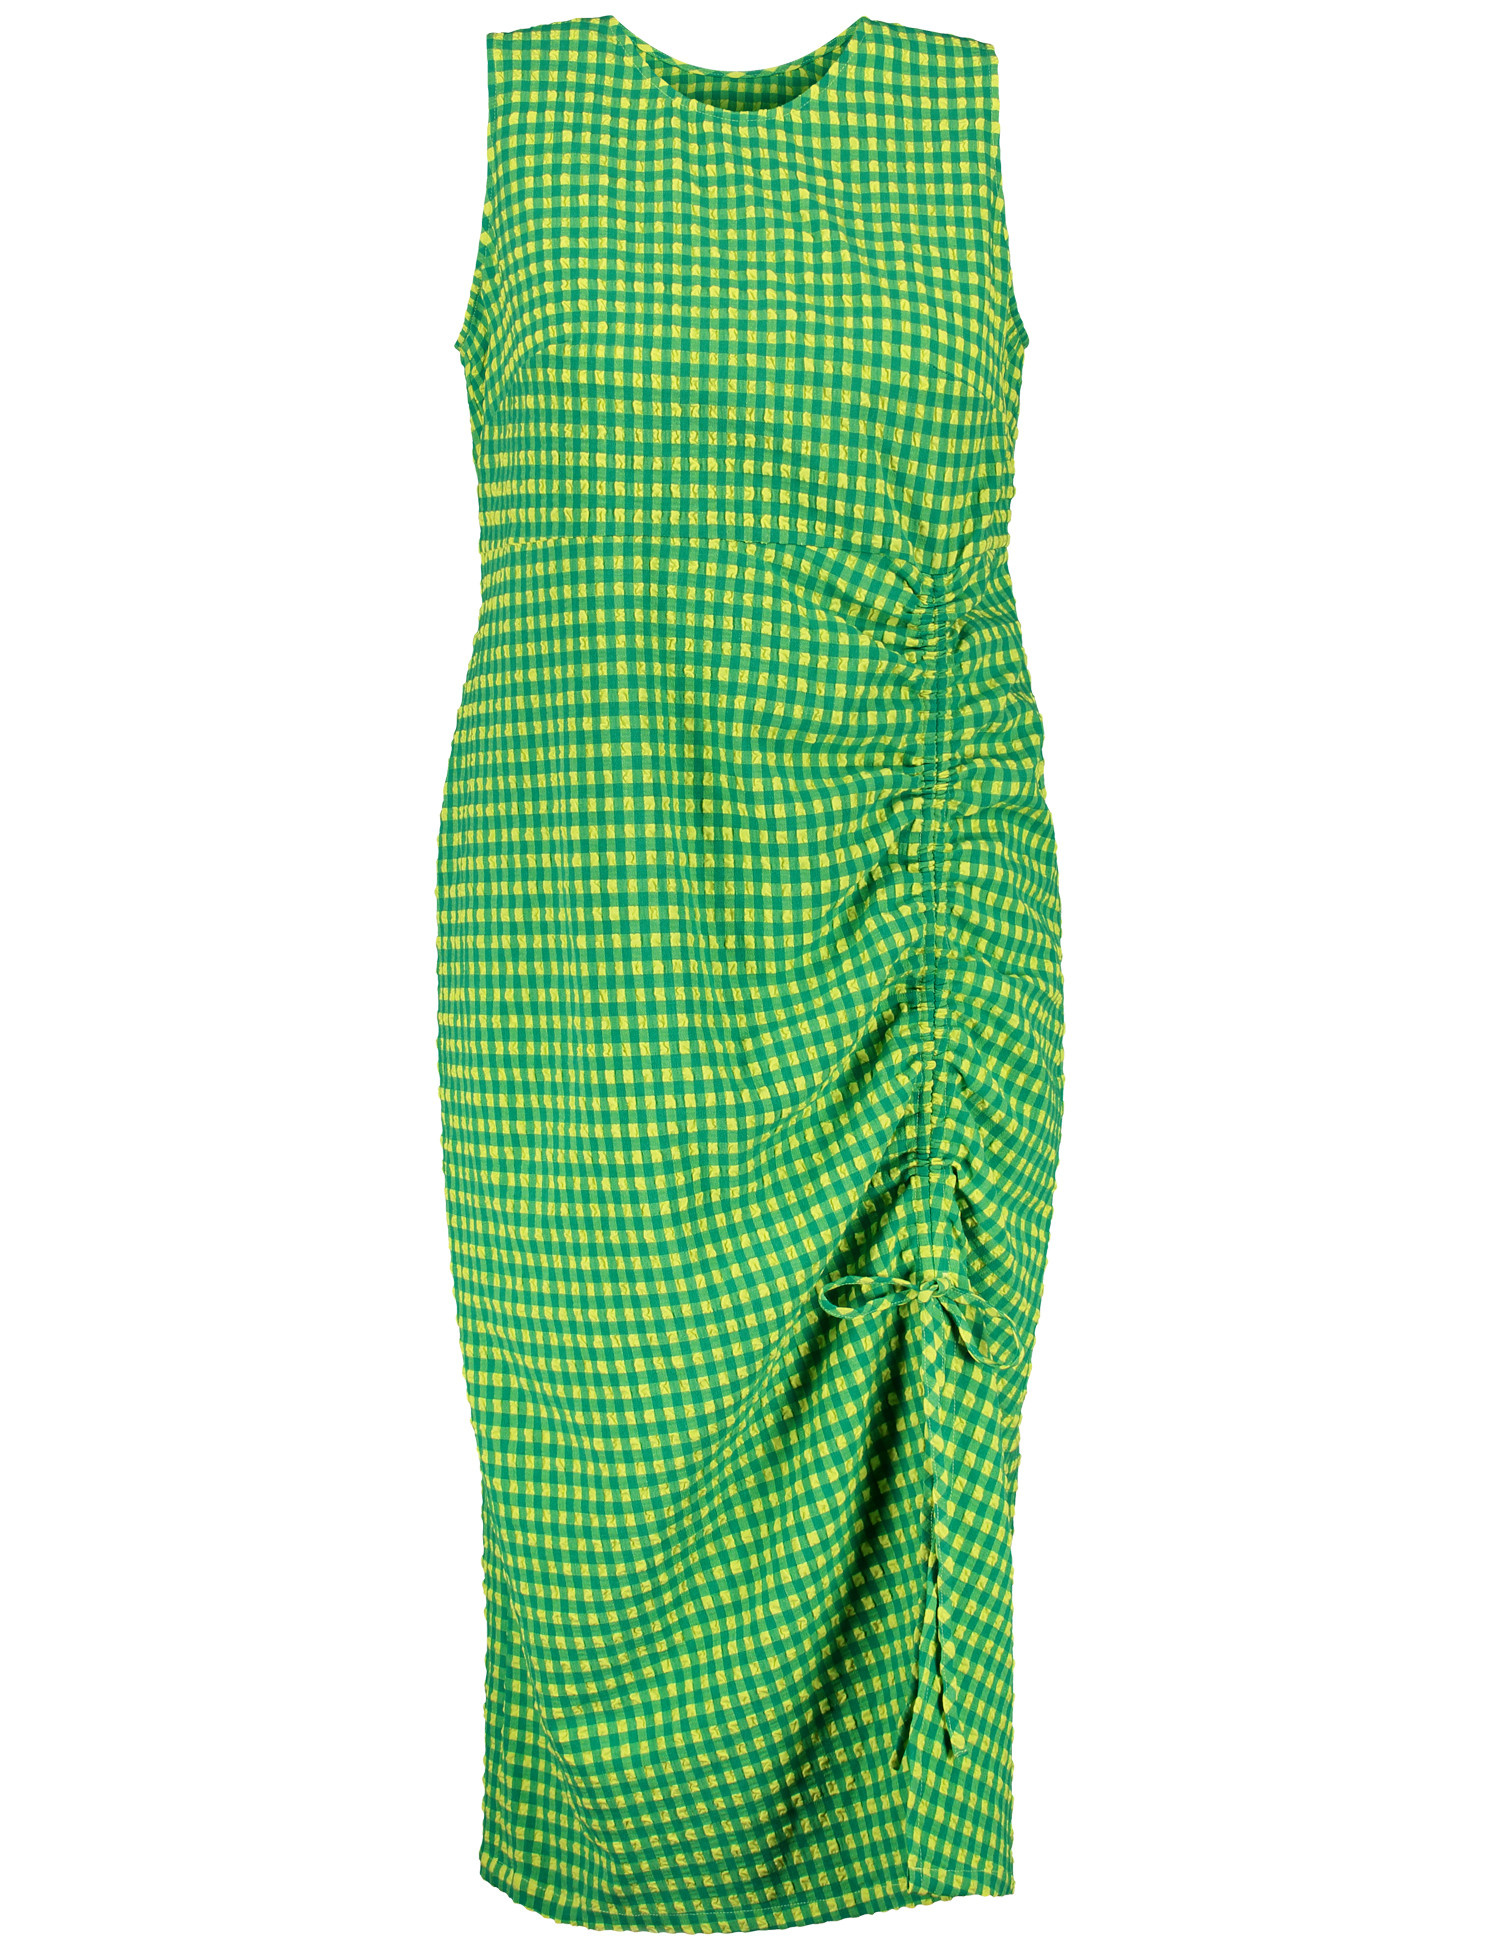 SAMOON Damen Ärmelloses Sommerkleid mit Schlitz Rundhals Grün kariert, 56 von SAMOON